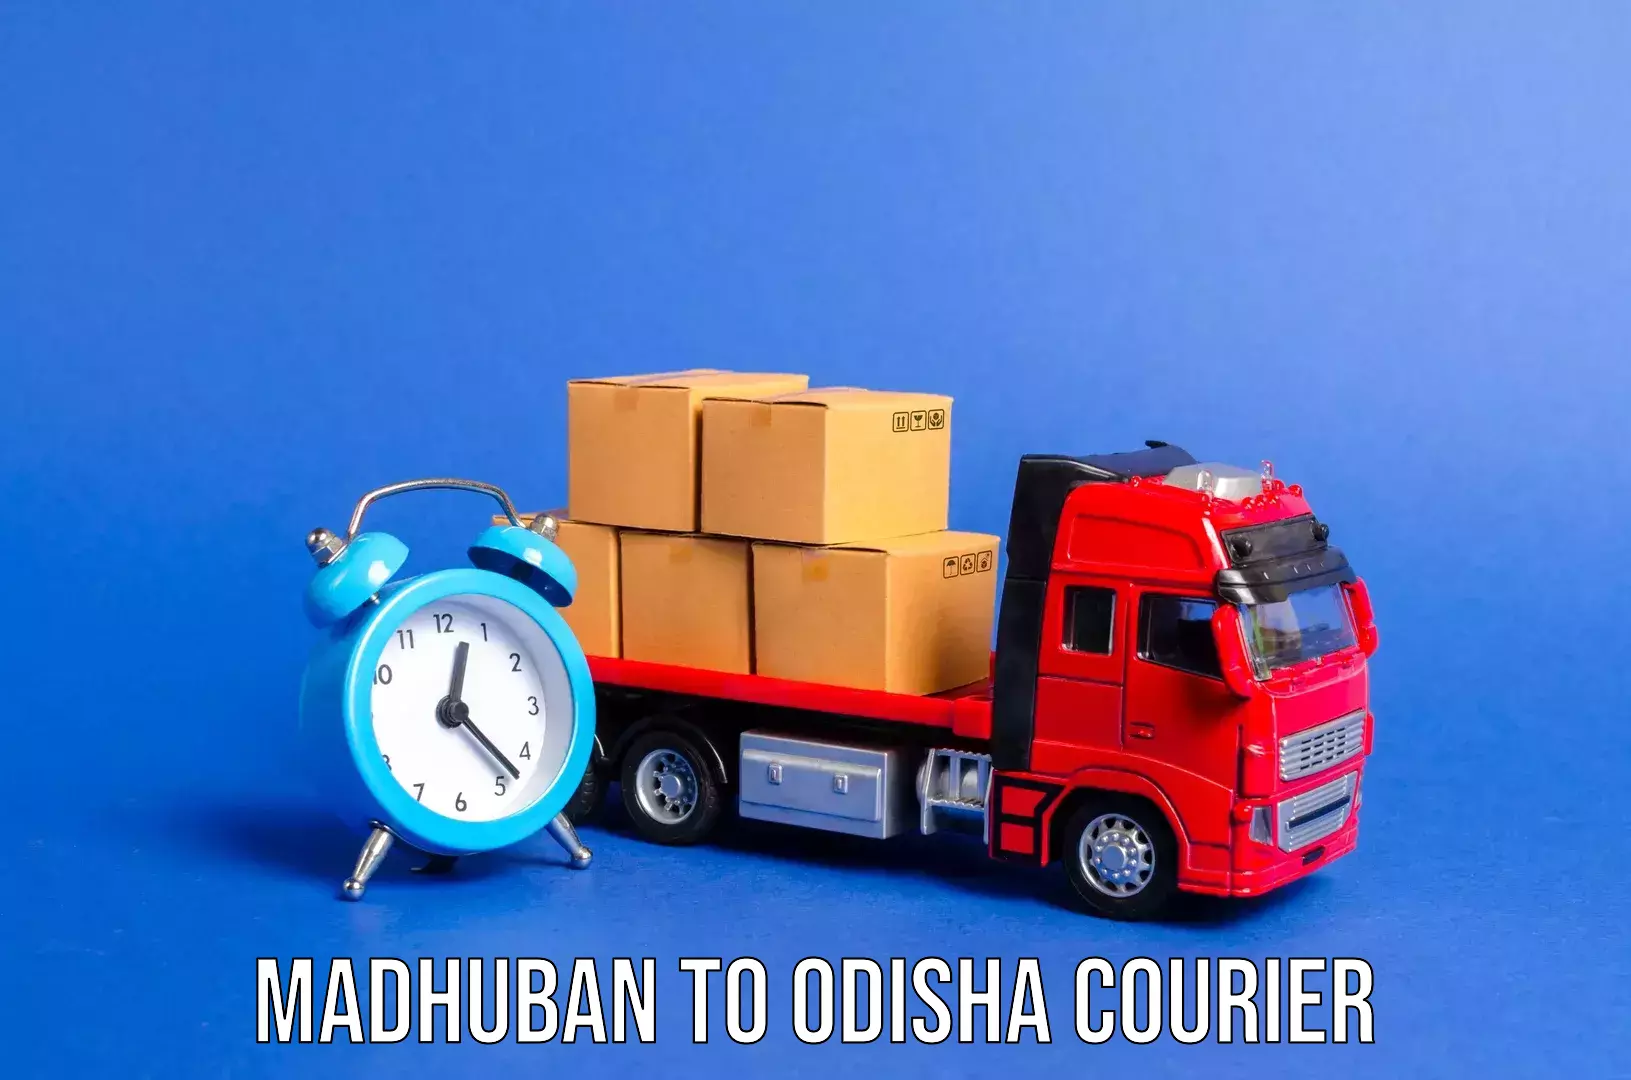 Baggage transport scheduler Madhuban to Tihidi